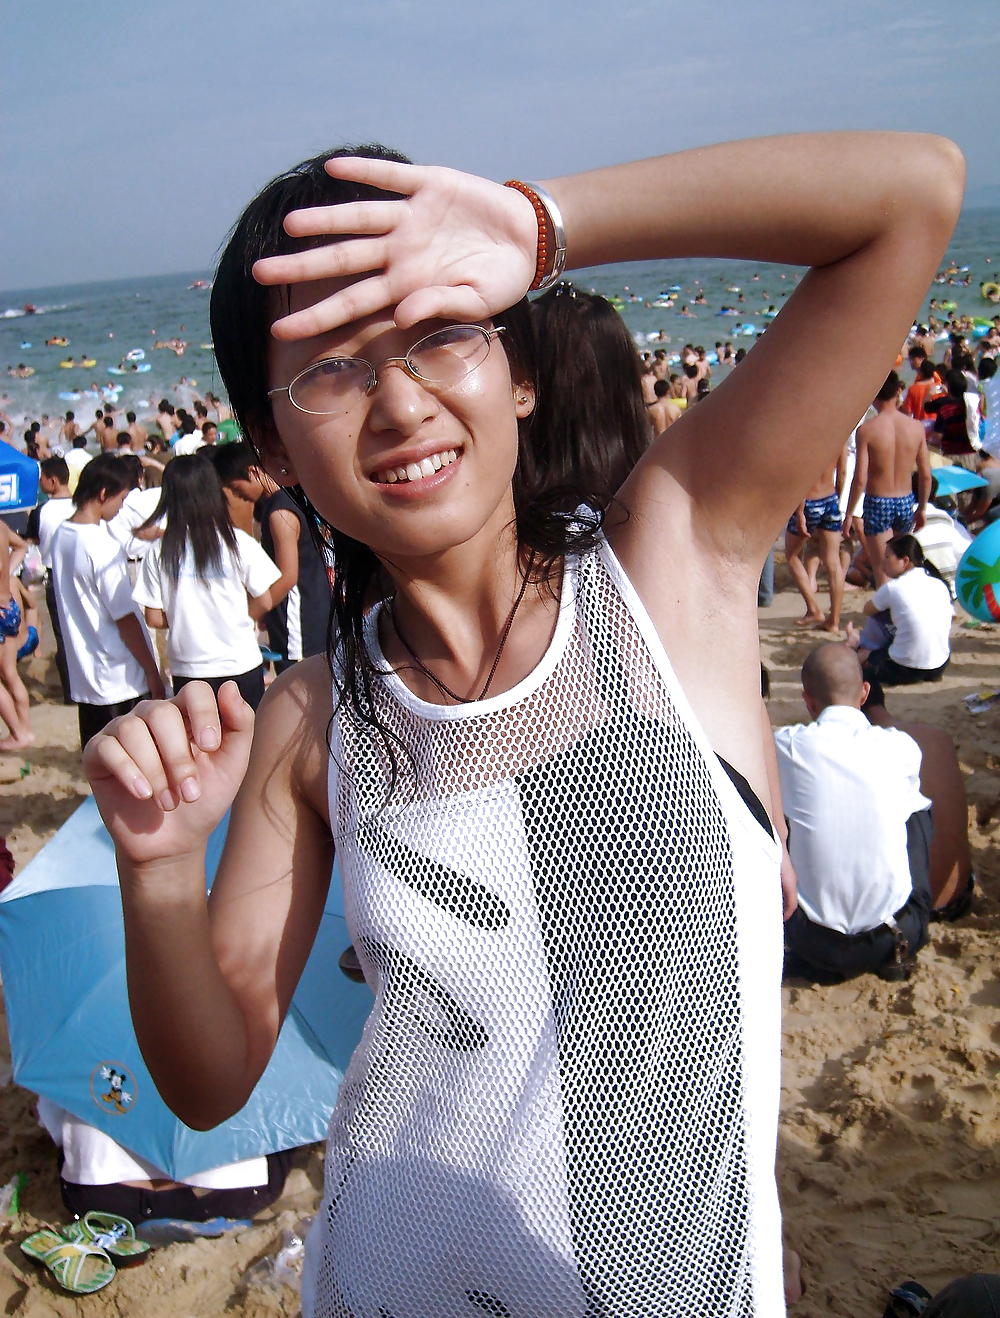 La mia visita alla spiaggia (belle asiatiche con ascelle pelose)
 #23640146